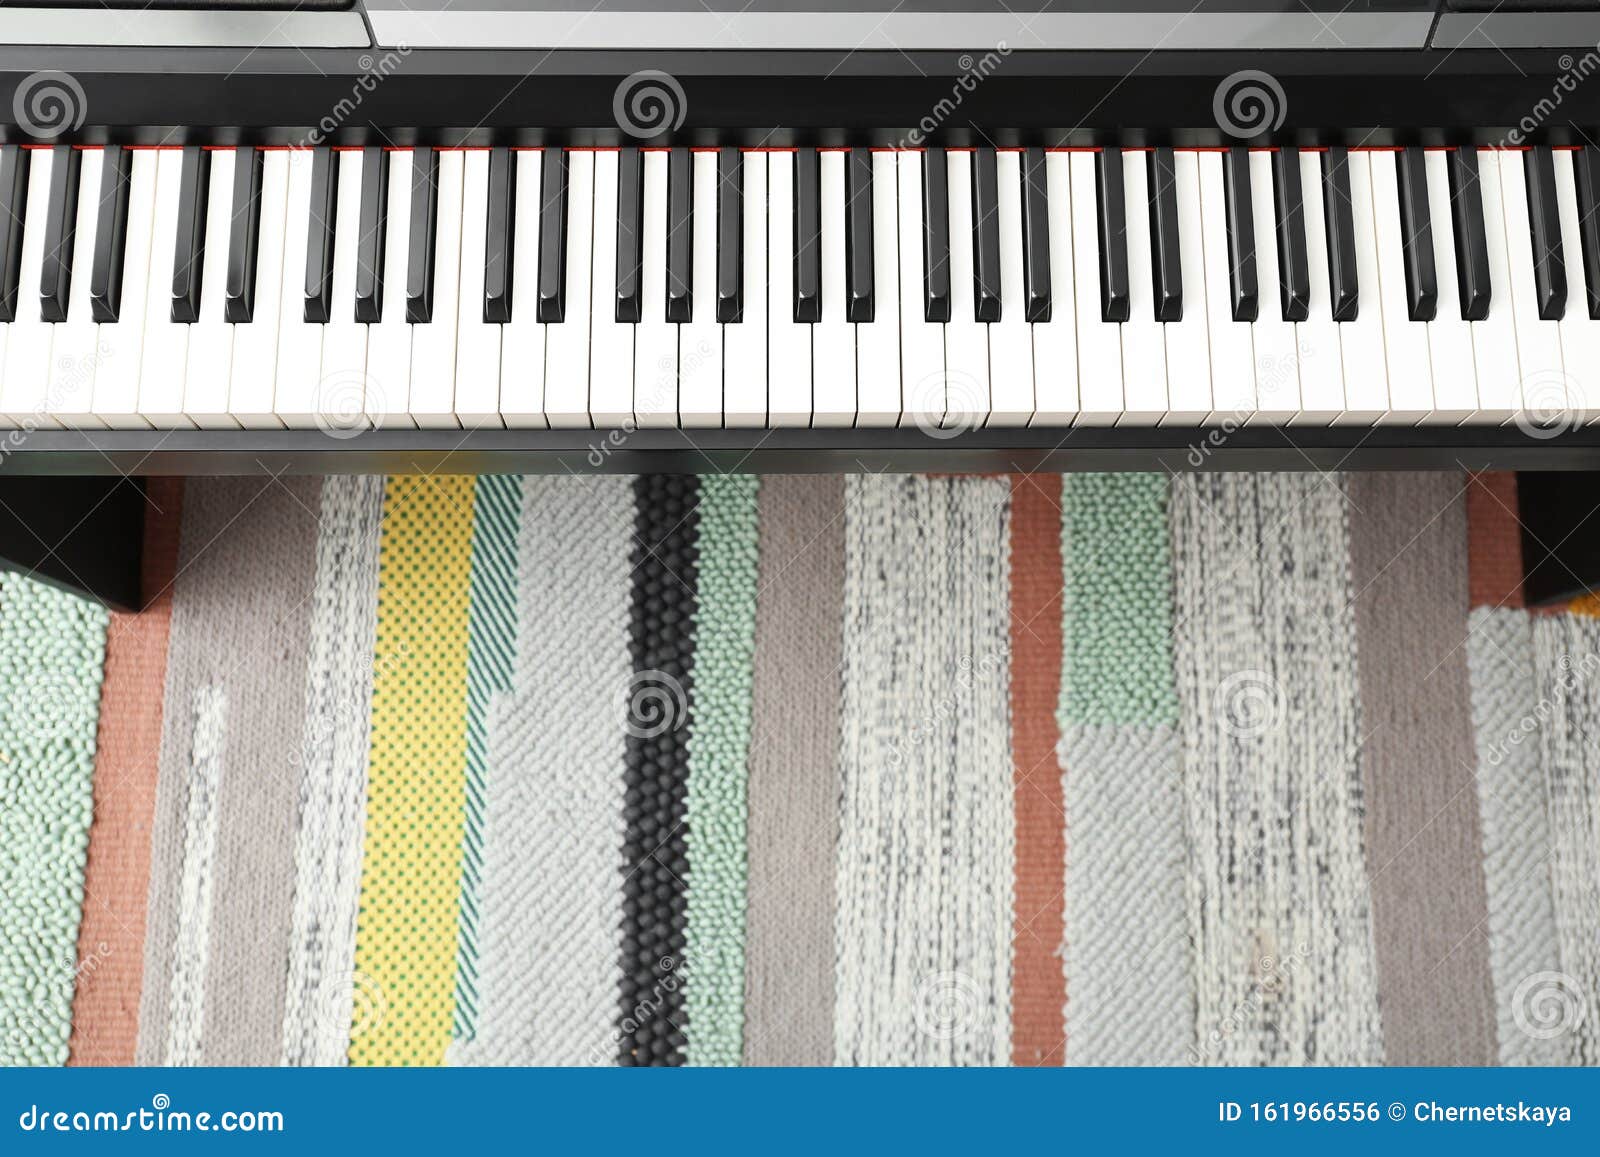 Modernes Klavier Mit Schwarzen Und Weißen Tasten über Teppich Textbereich  Stockfoto - Bild von haupt, kultur: 161966556